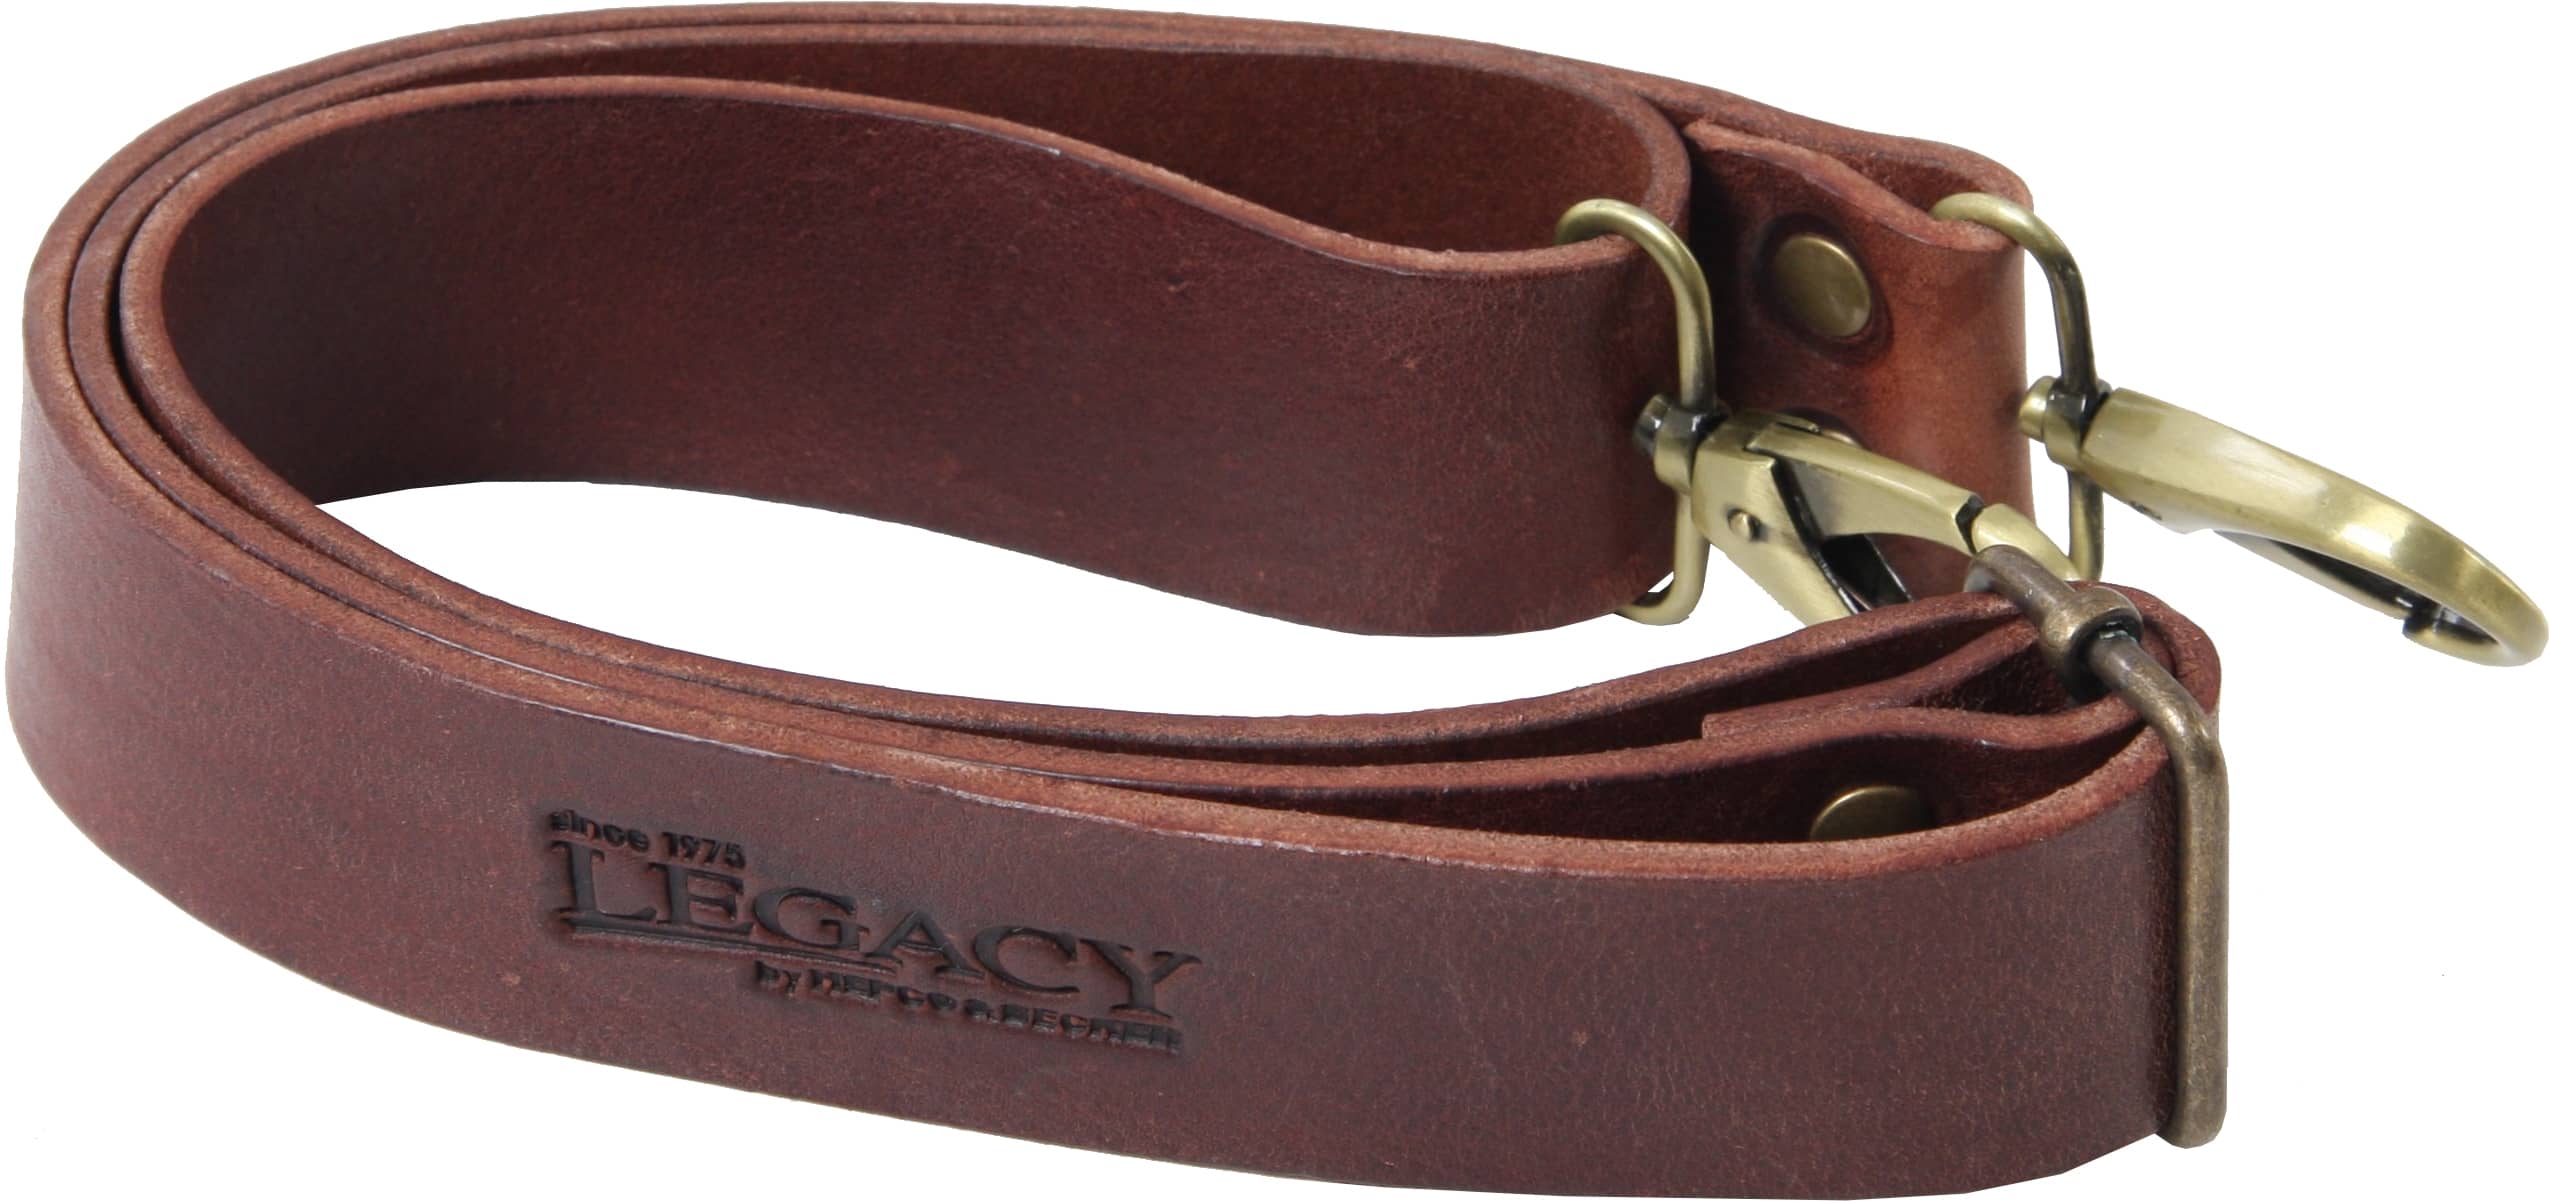 Legacy shoulder strap